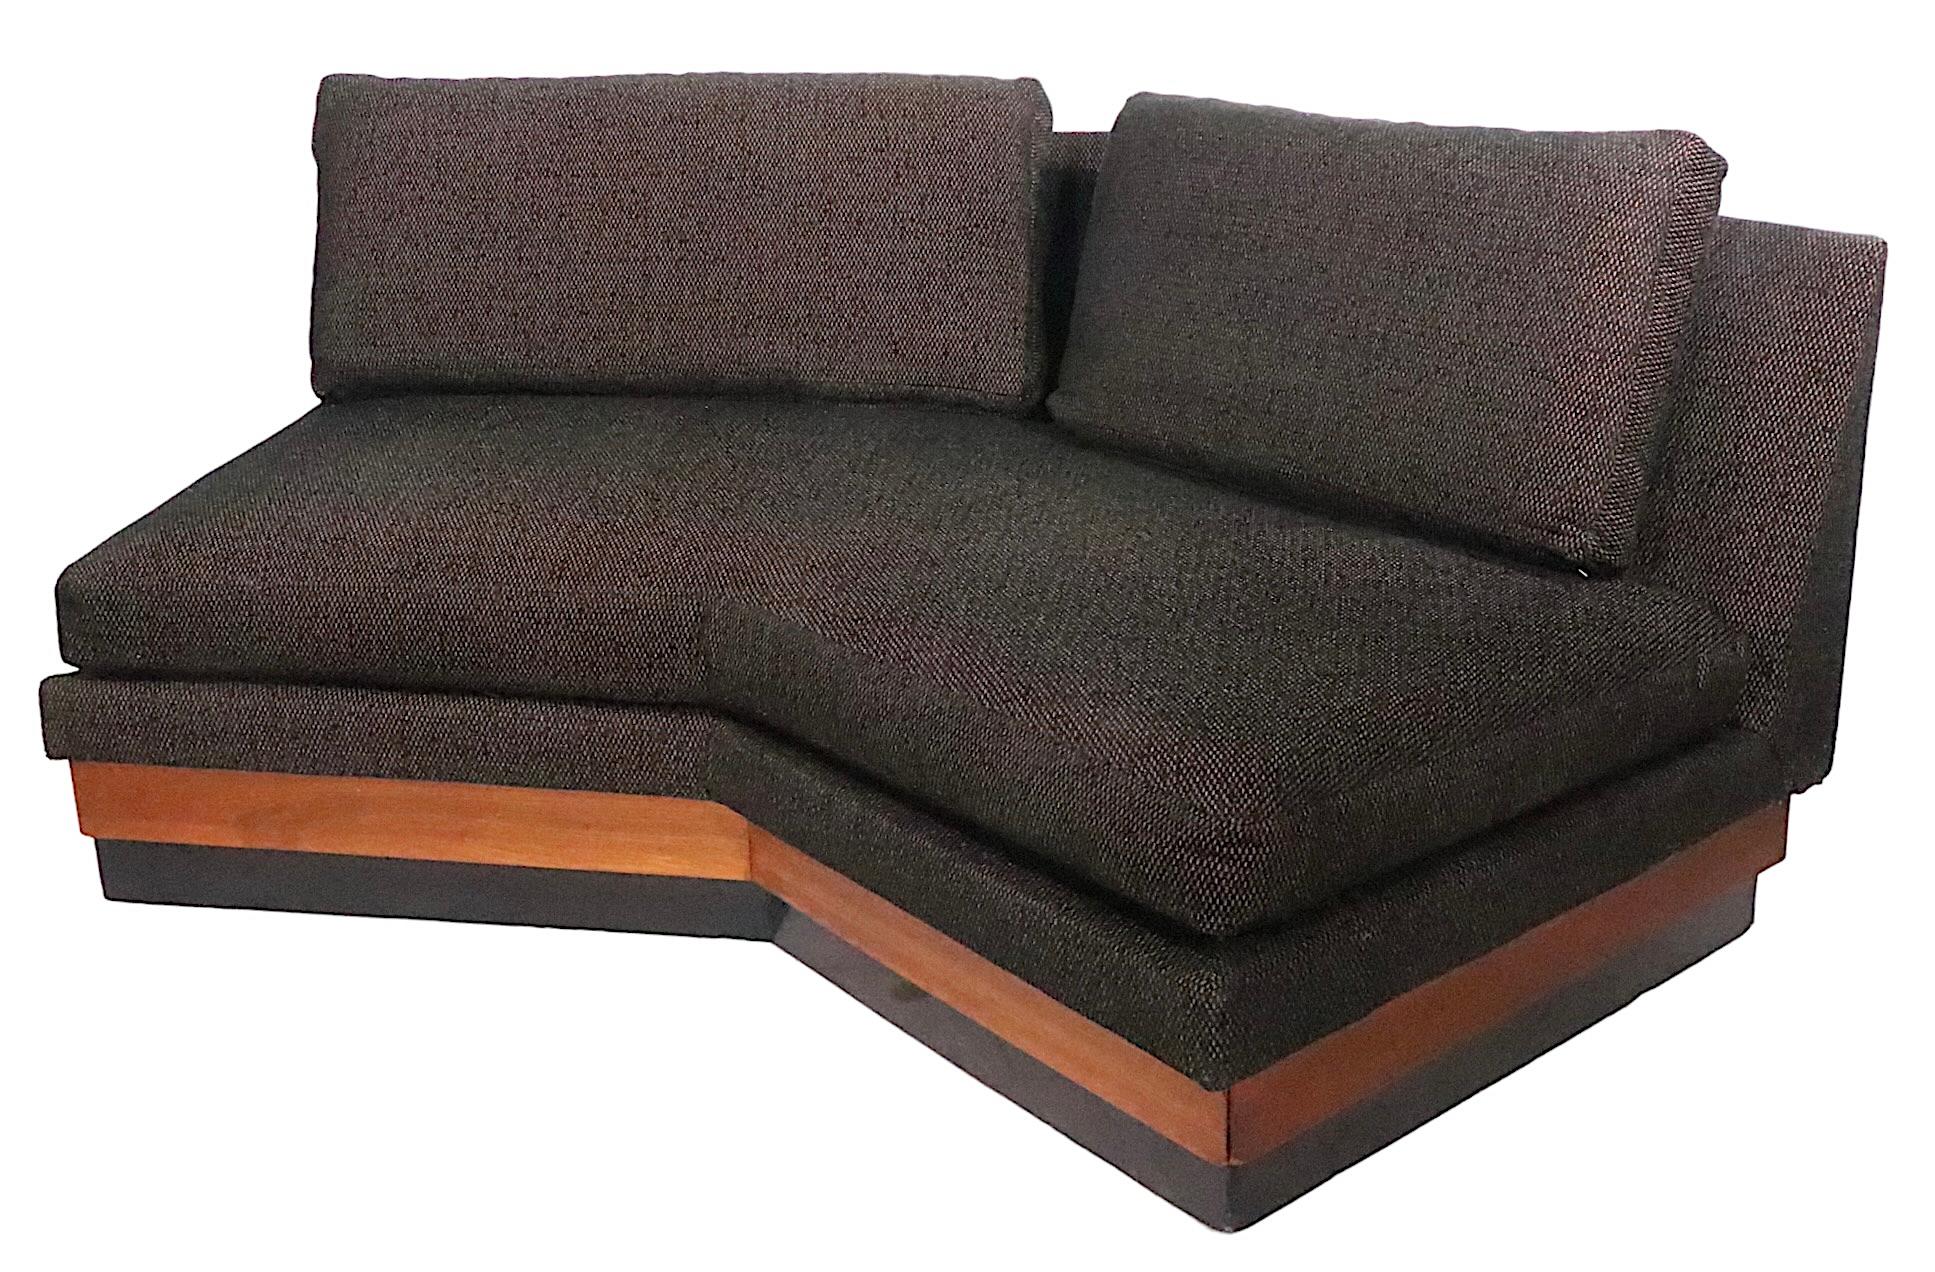 Canapé sectionnel architectural en deux parties, conçu par Adrian Pearsall pour Craft Associates. Le canapé comporte une section en angle, qui comporte un meuble de rangement à son extrémité, avec un couvercle de porte escamotable. L'autre section